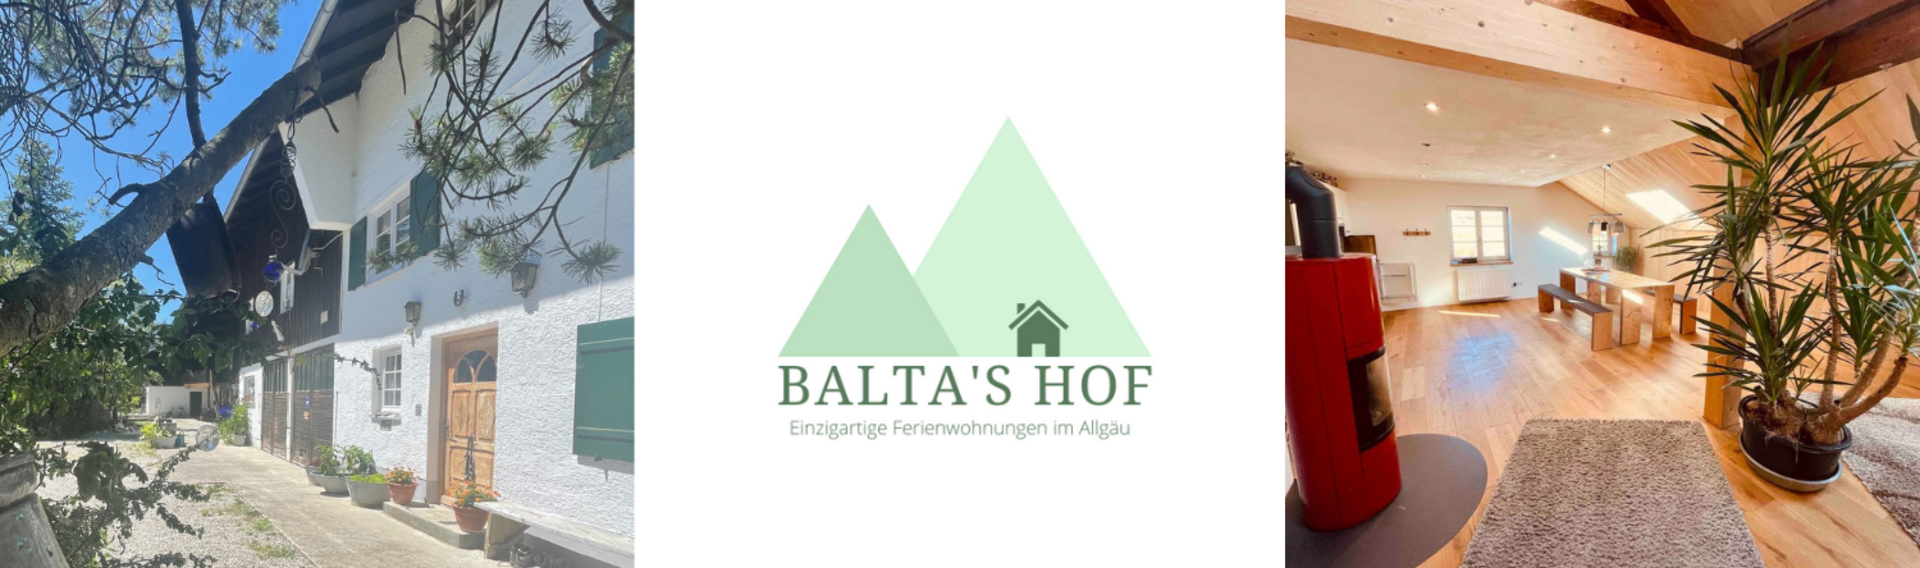 Balta's Hof - Ferienwohnungen im Allgäu